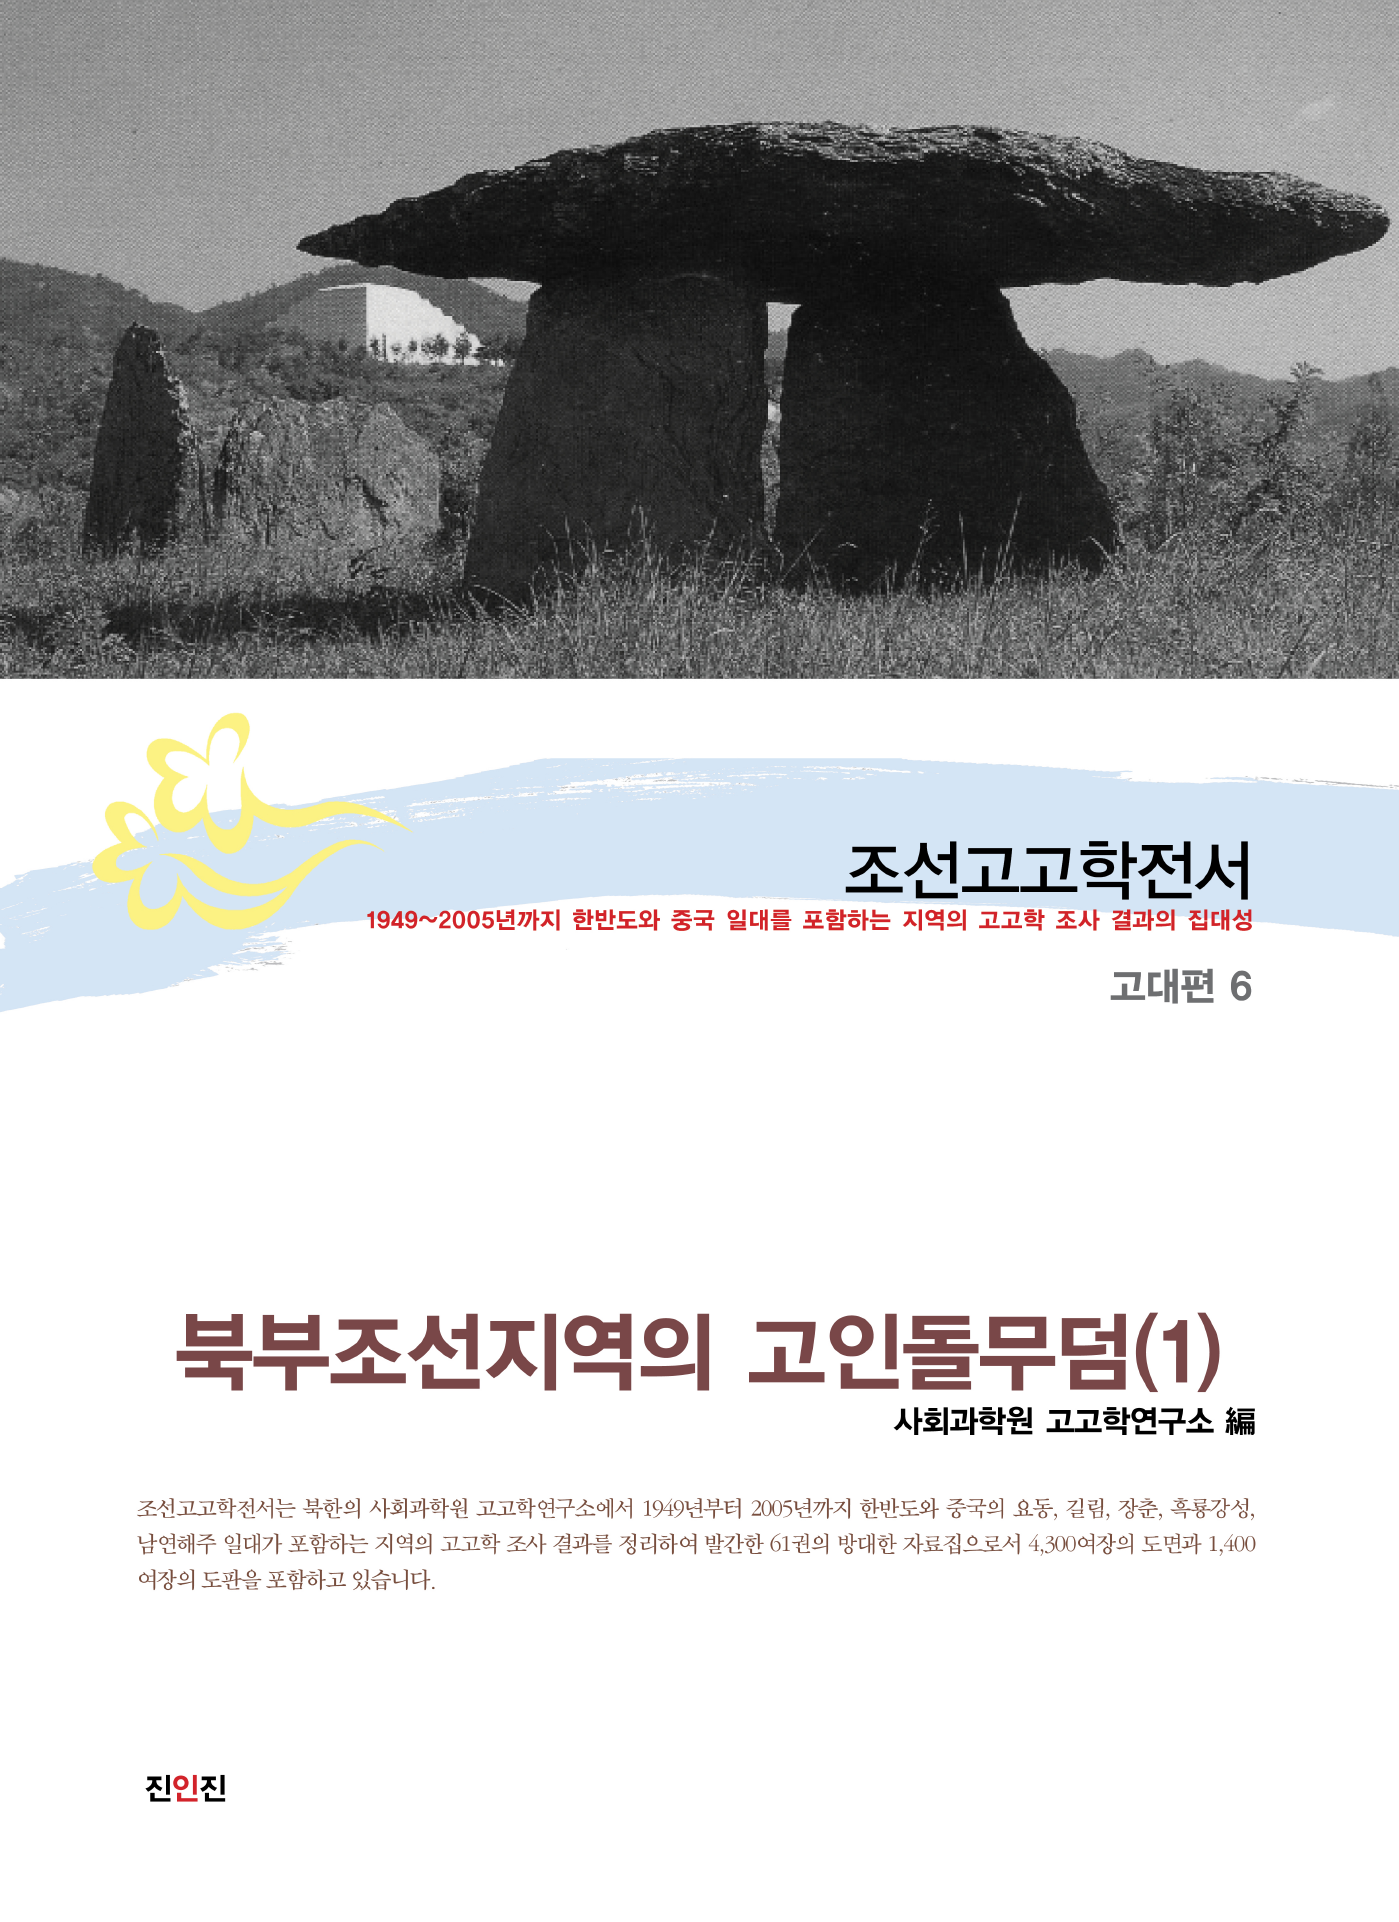 조선고고학전서15 고대편6 북부조선지역의 고인돌무덤 (1)